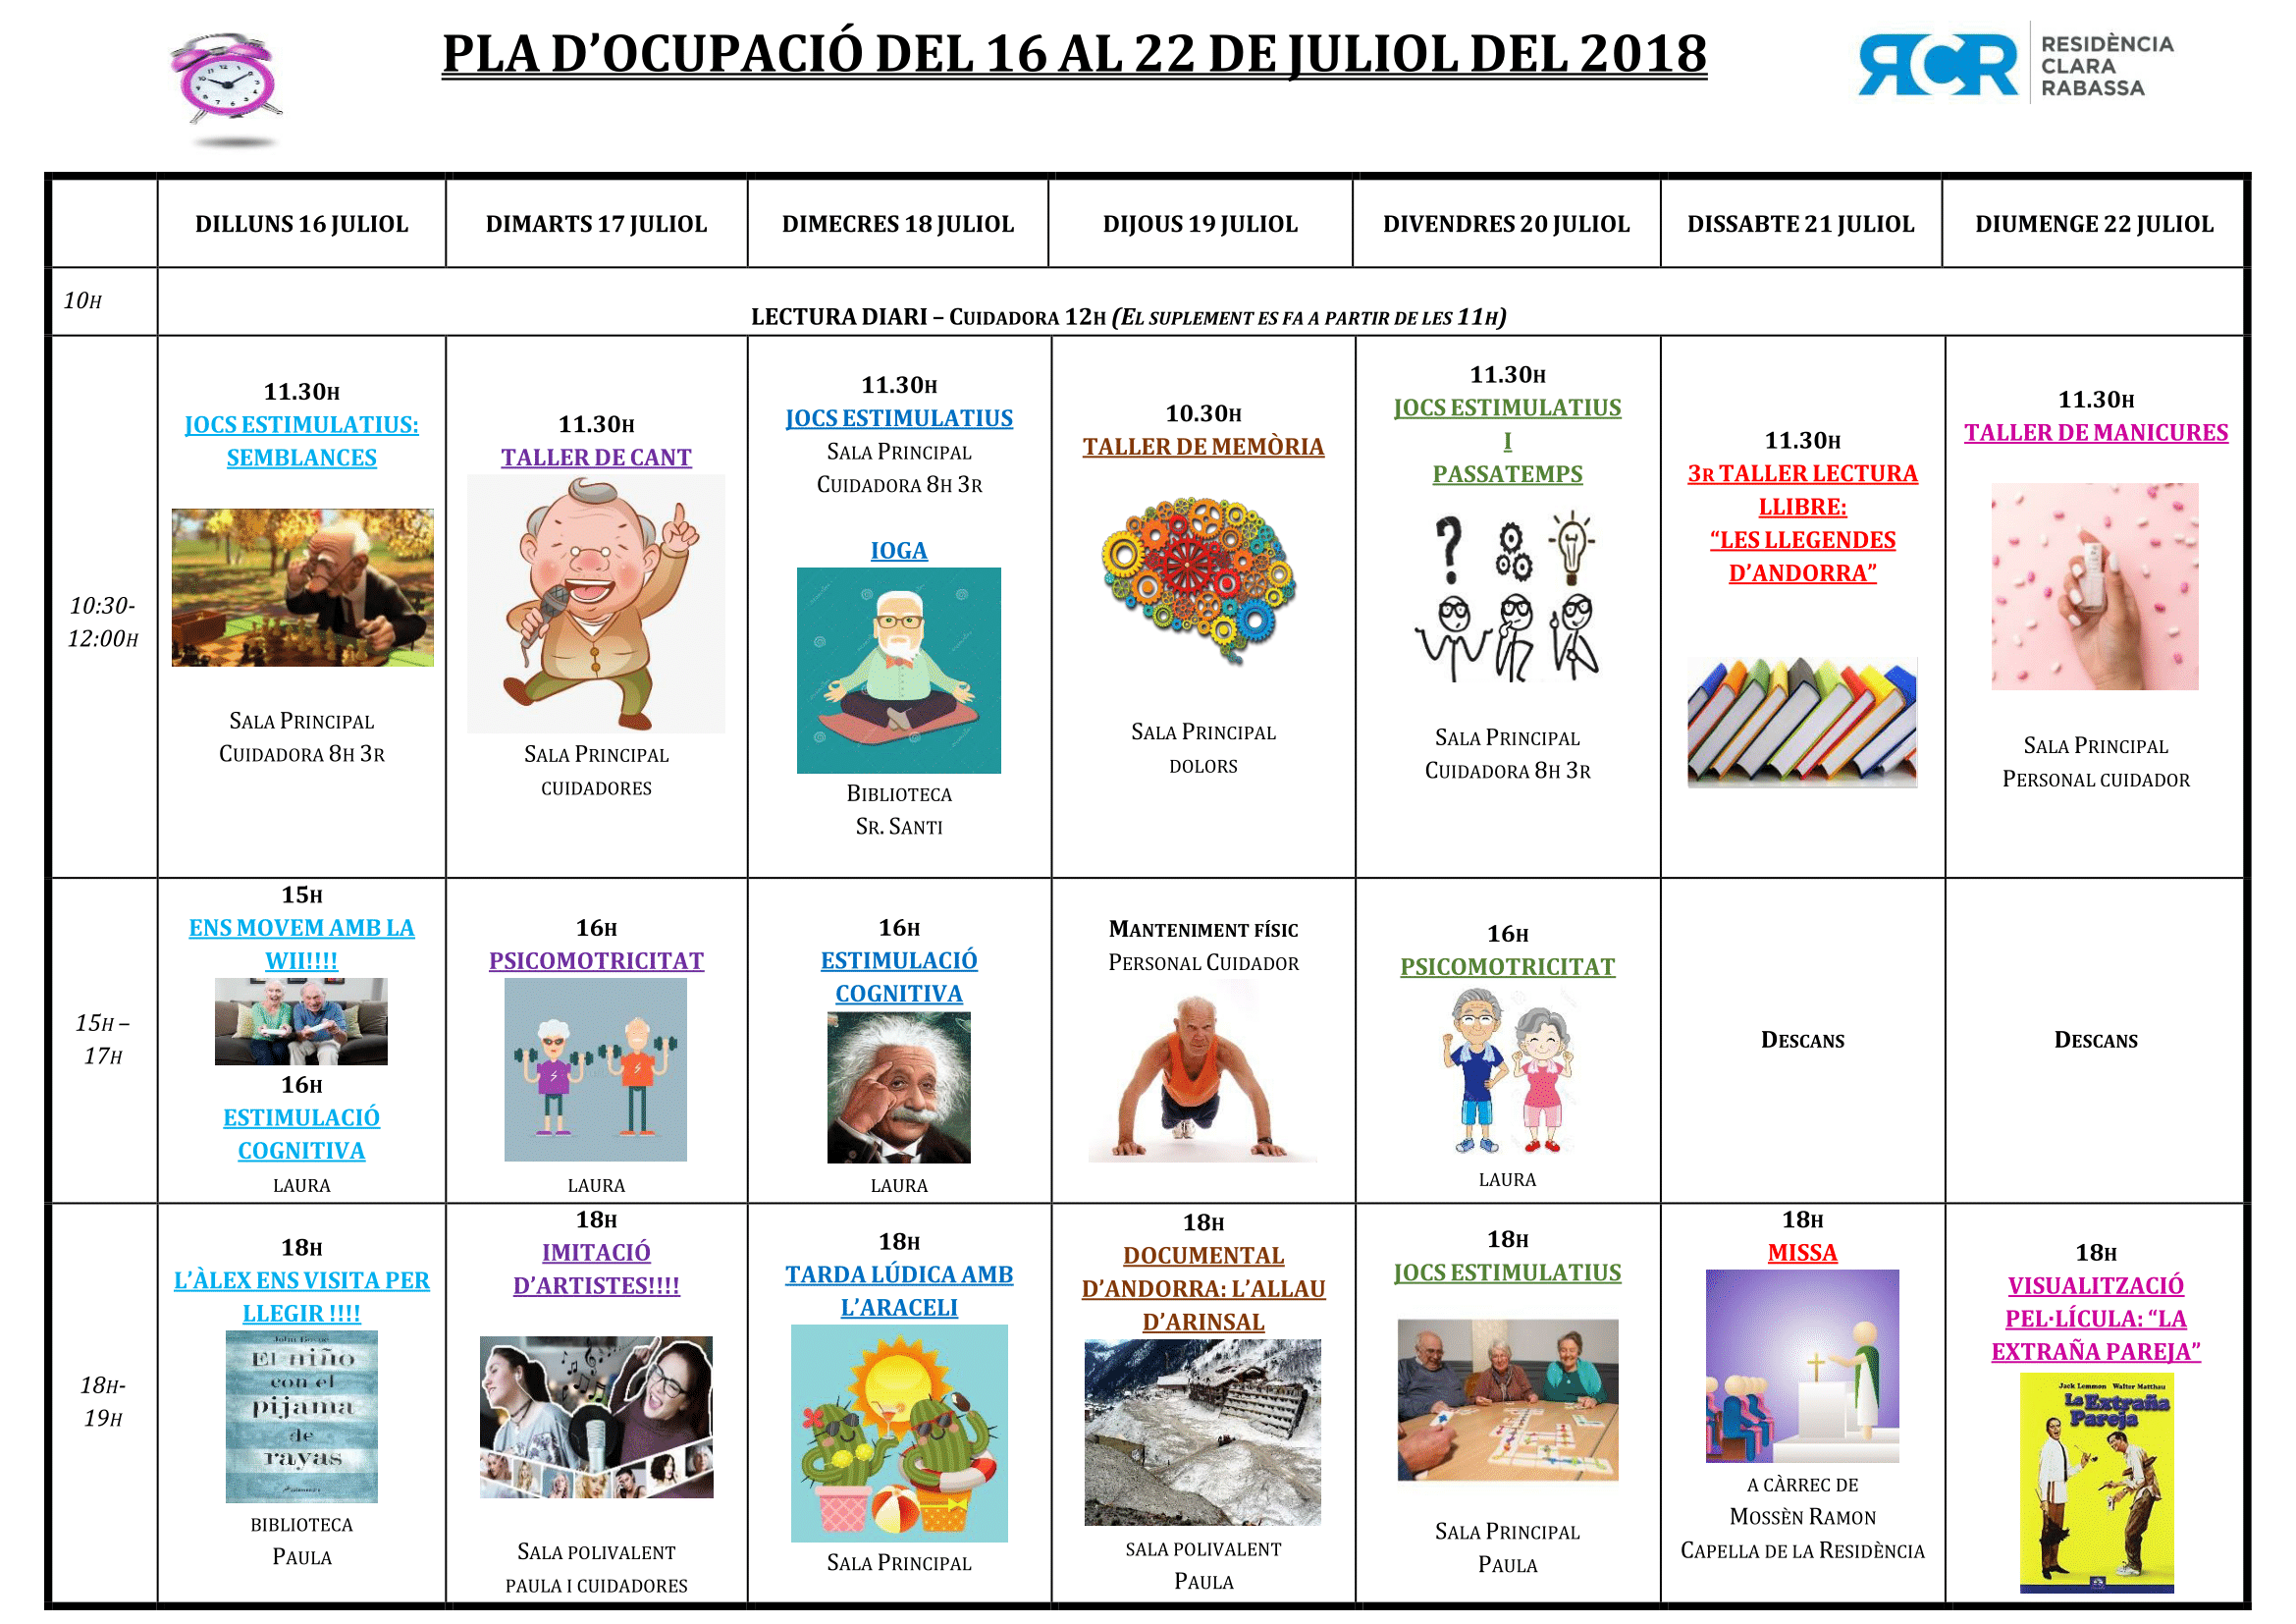 PLA OCUPACIÓ DEL 16 AL 22 DE JULIOL DE 2018